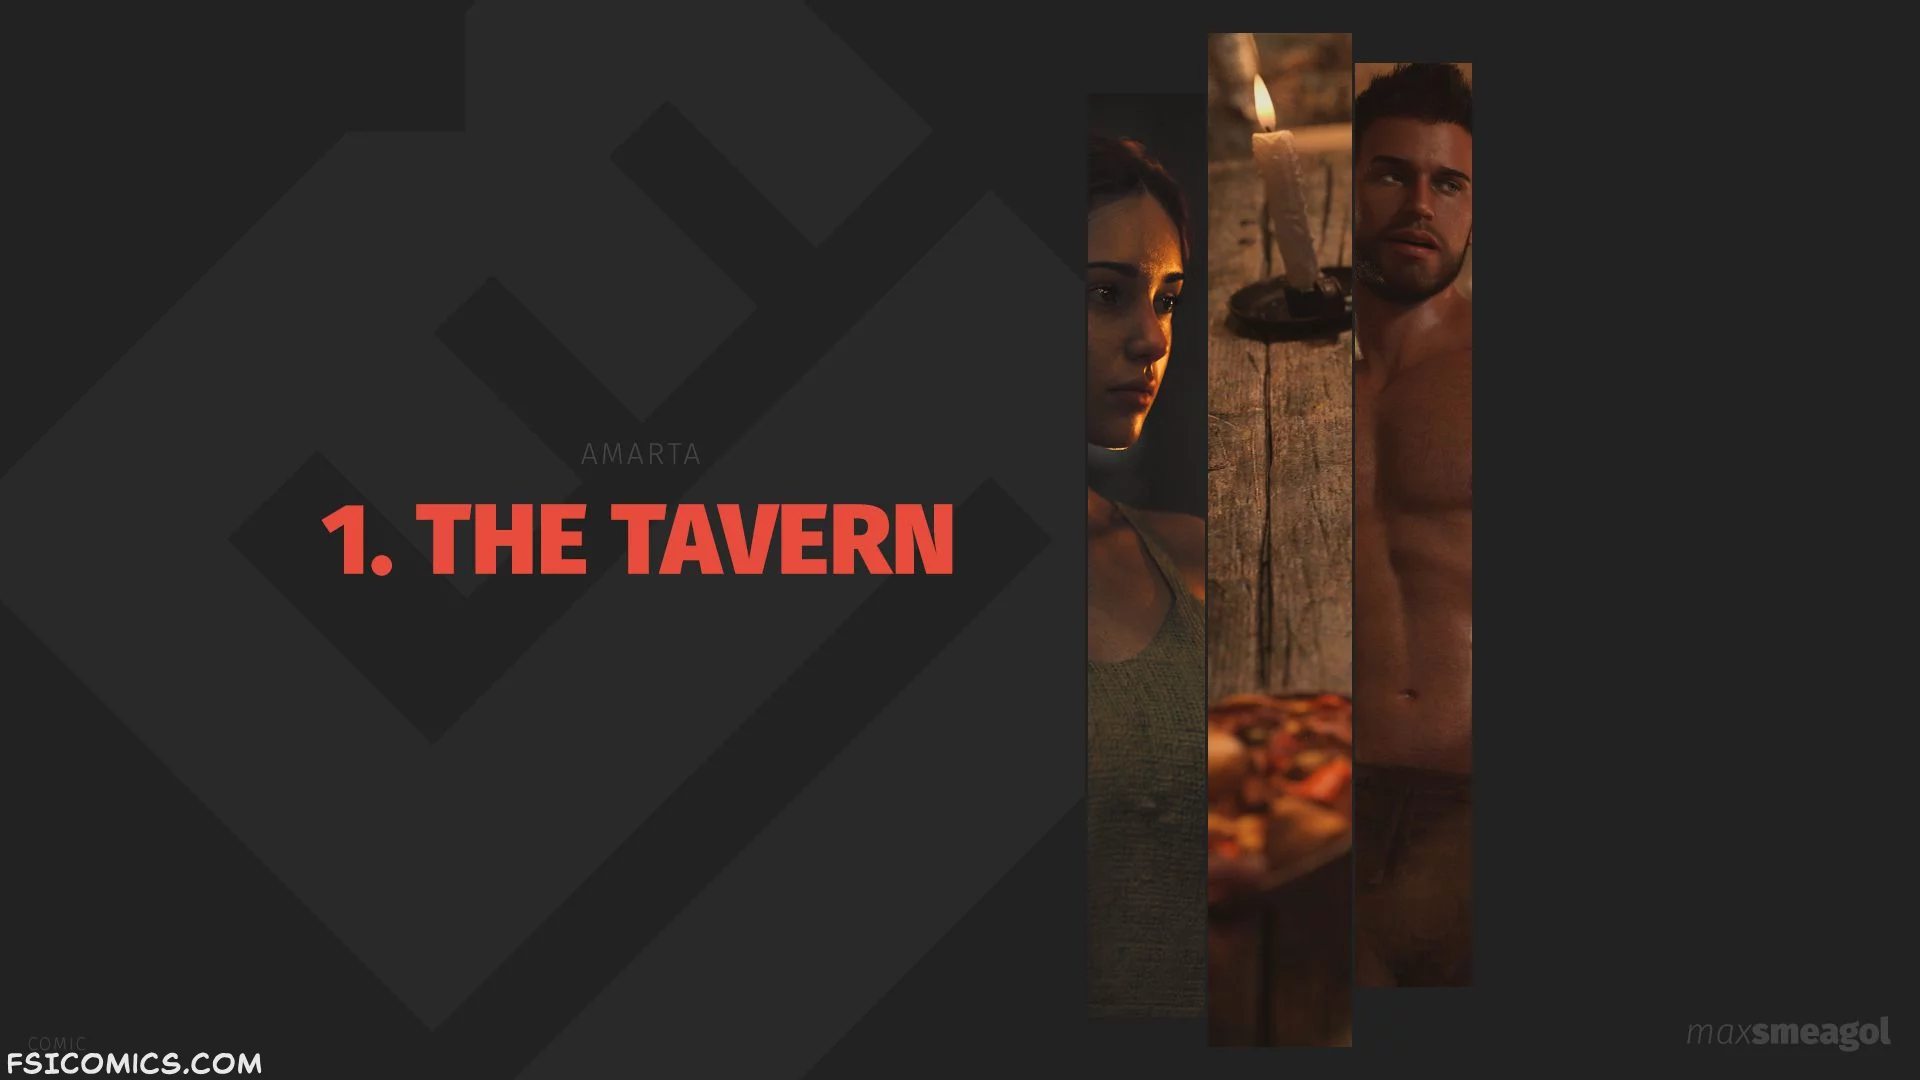 The Tavern Chapter 1 - MaxSmeagol - 19 - FSIComics